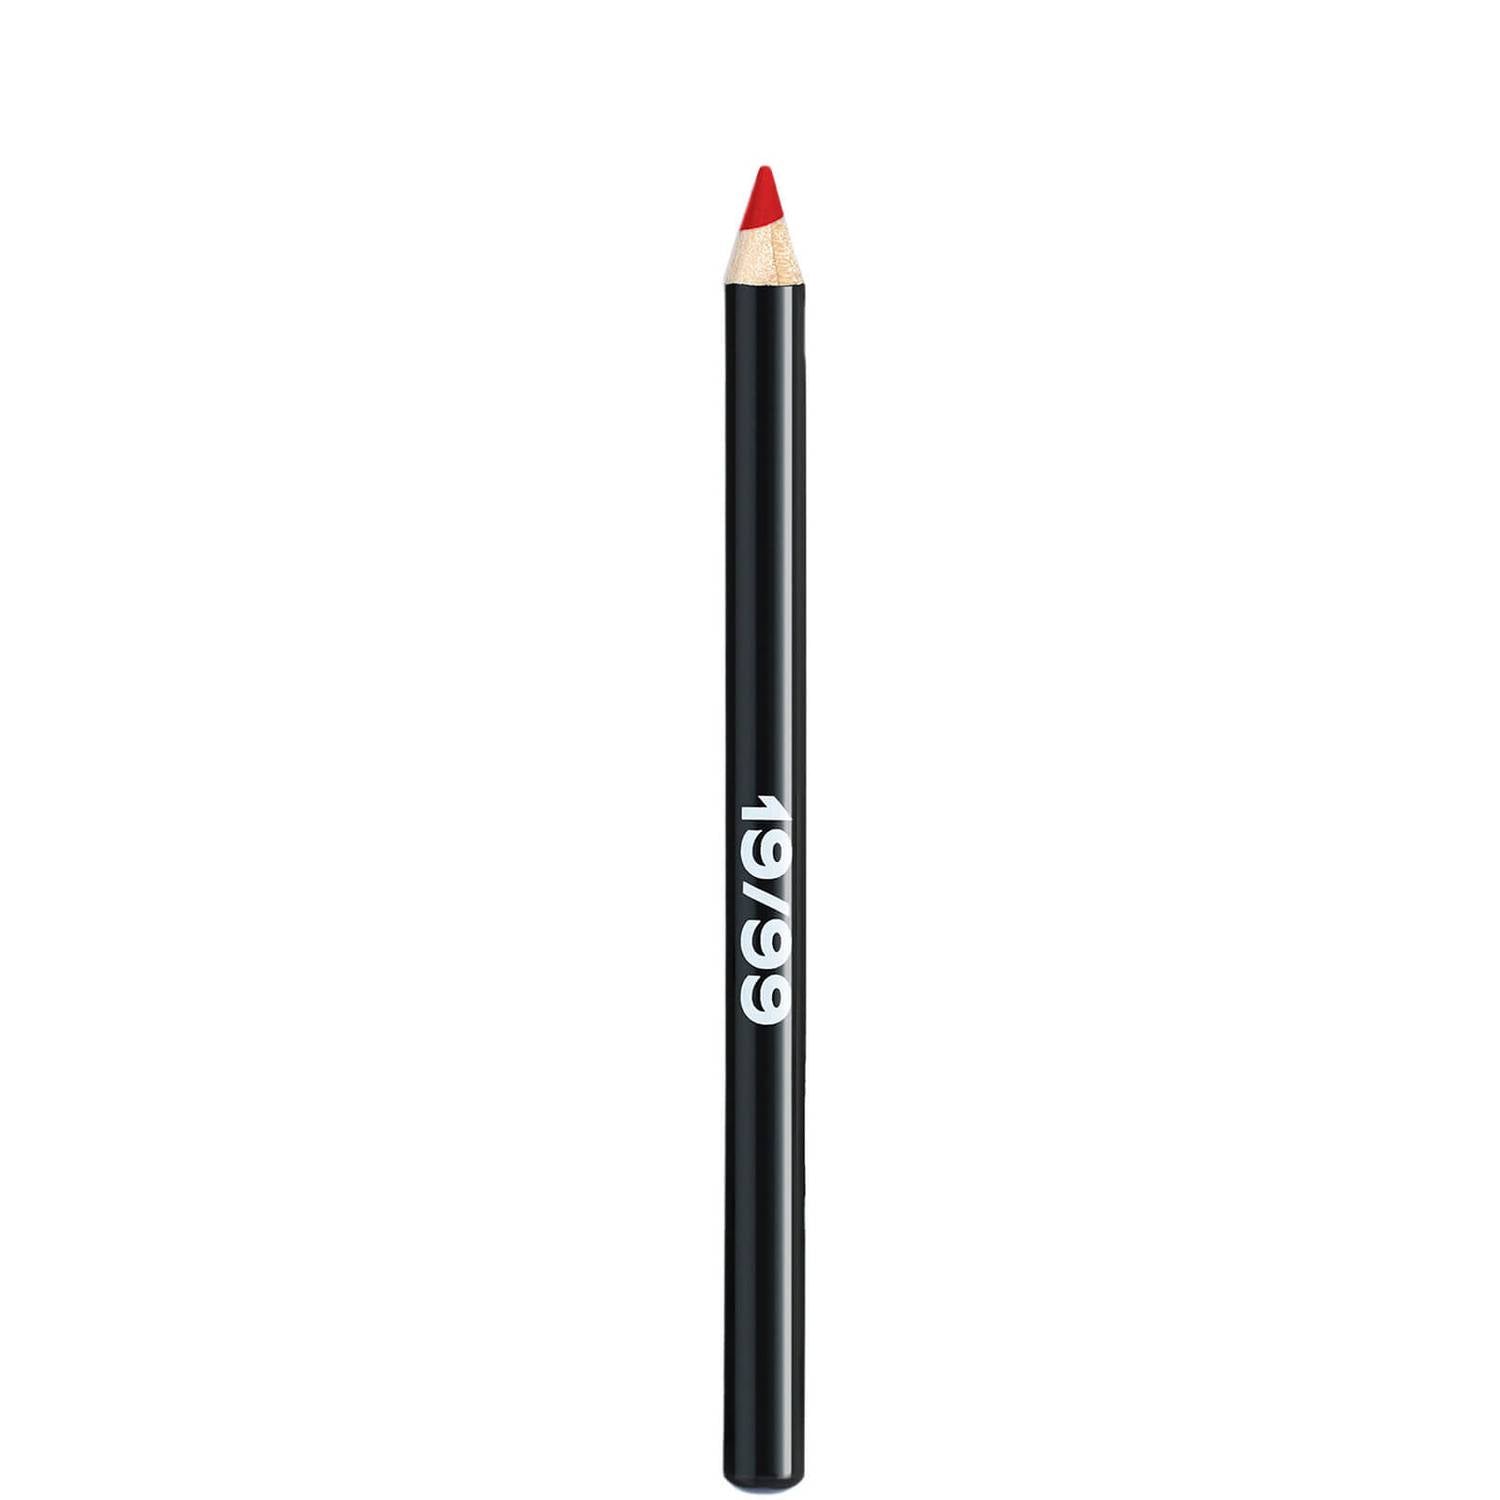 19/99 Beauty Precision Colour Pencil Bundle